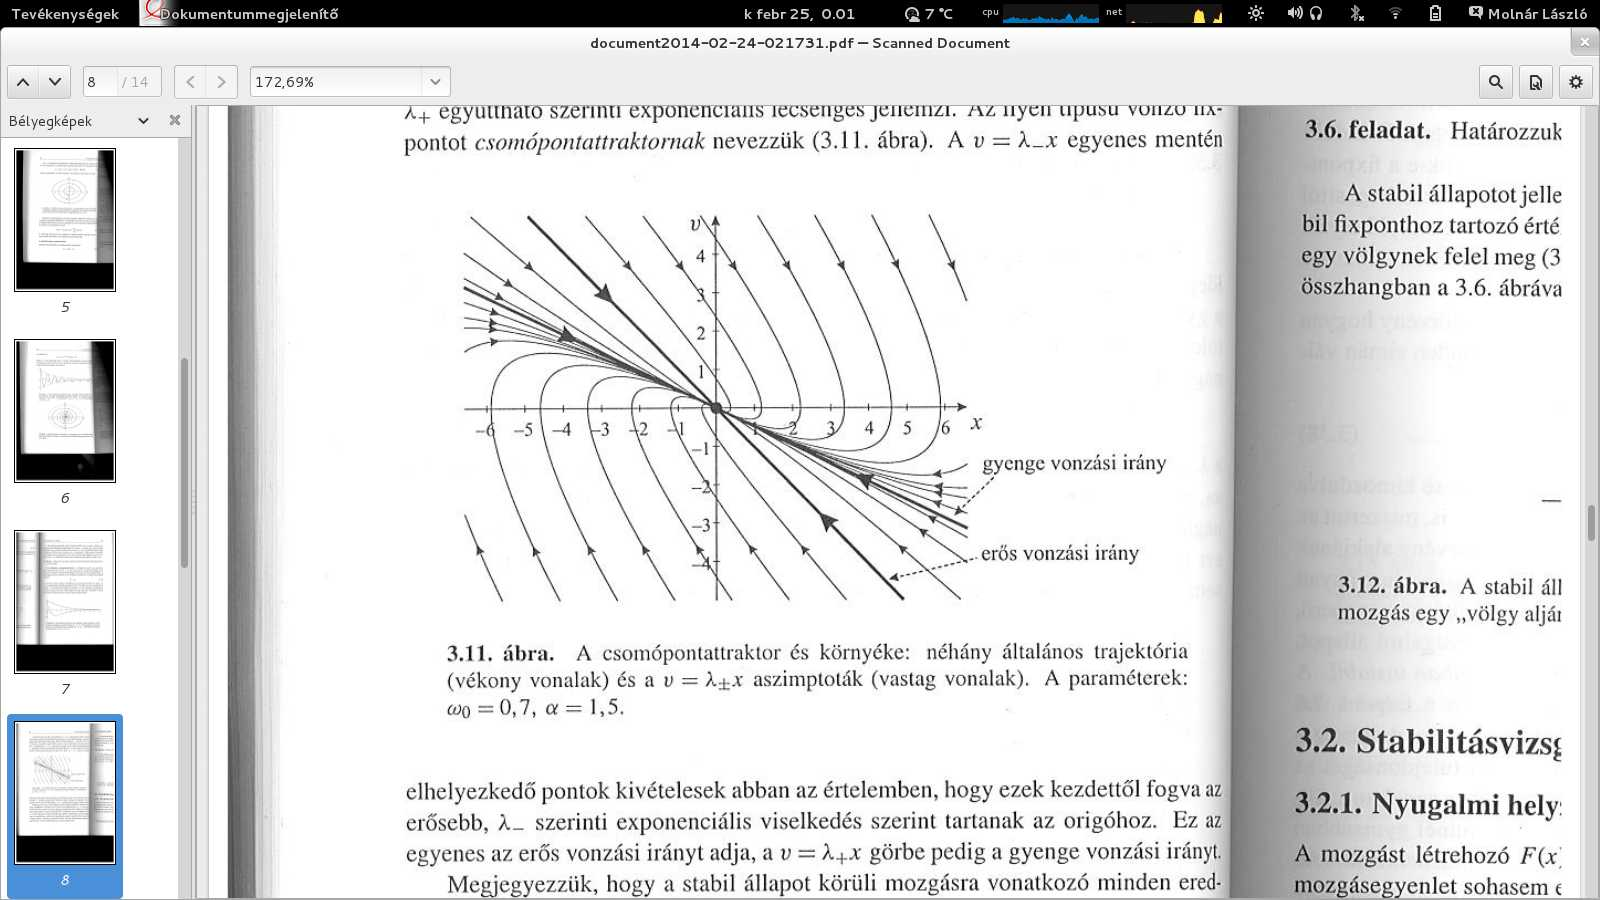 Mozgás stabil pont körül Ha a csillapítás erős: α/2 > ω0 Lecsengést nem kíséri oszcilláló mozgás Csomópontattraktor